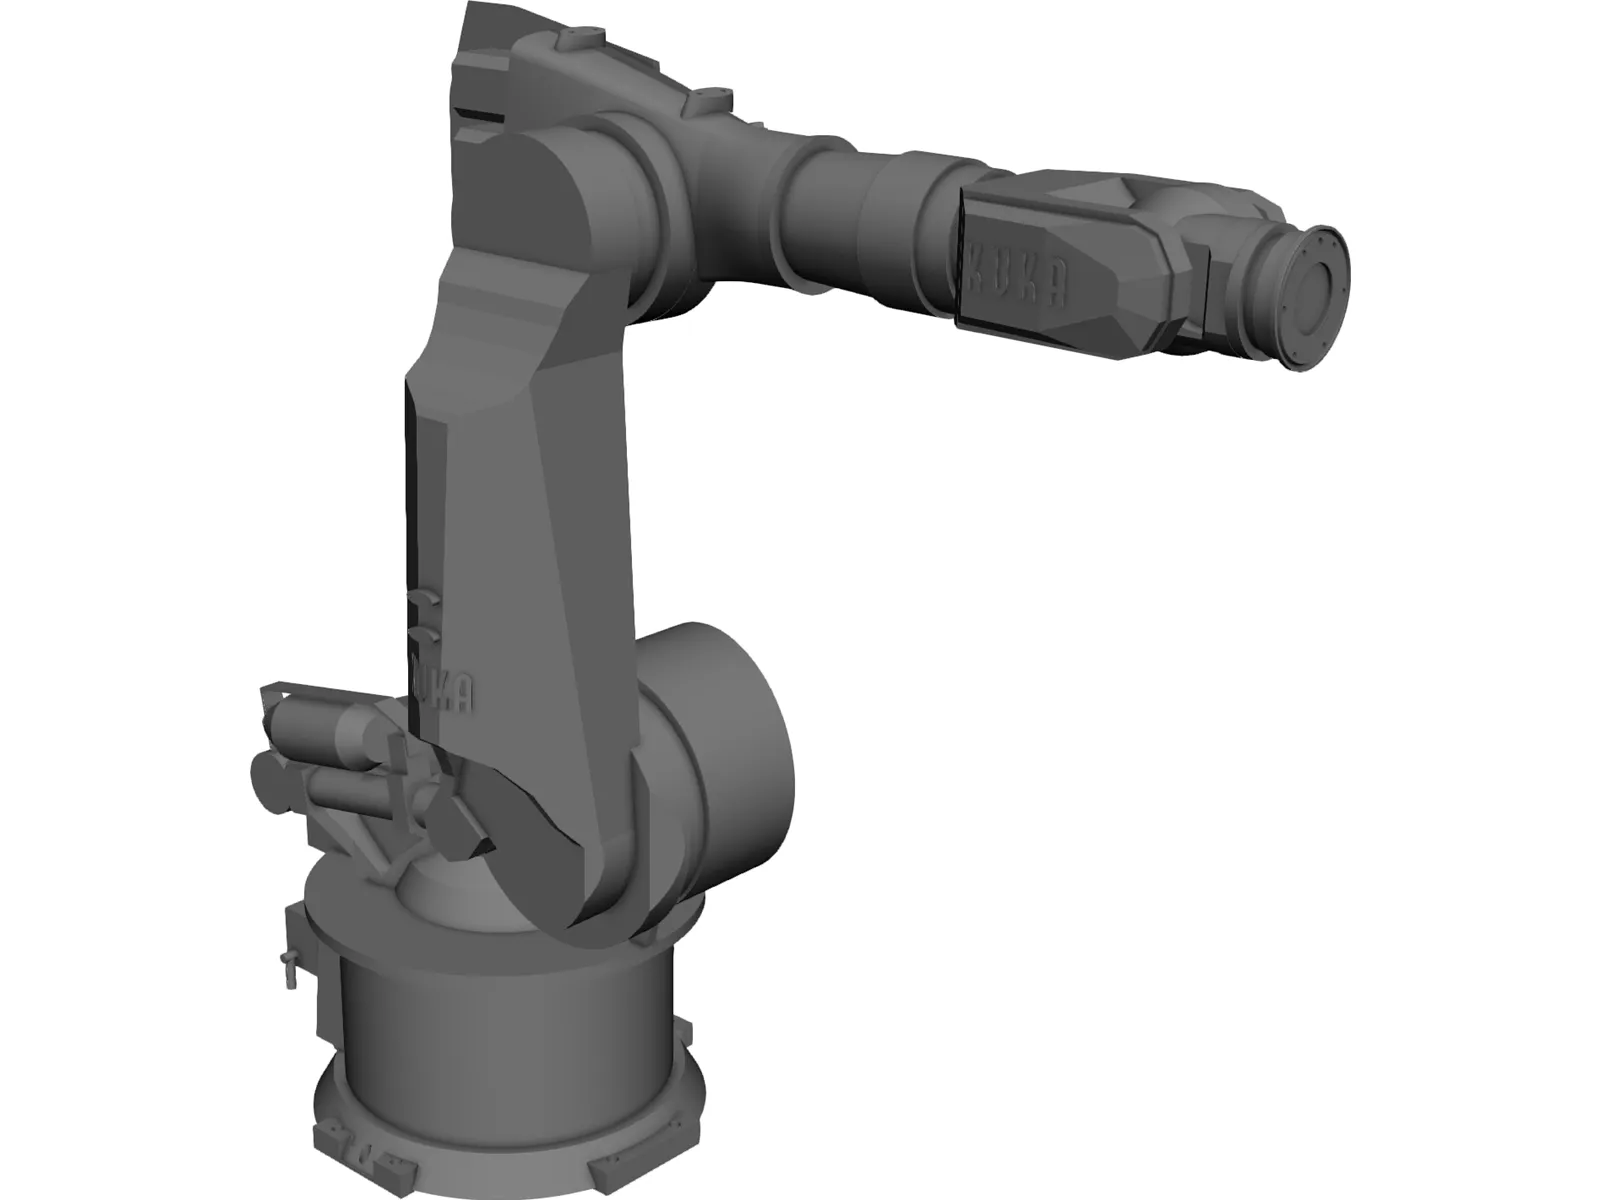 Kuka Robot KR500 3D Model